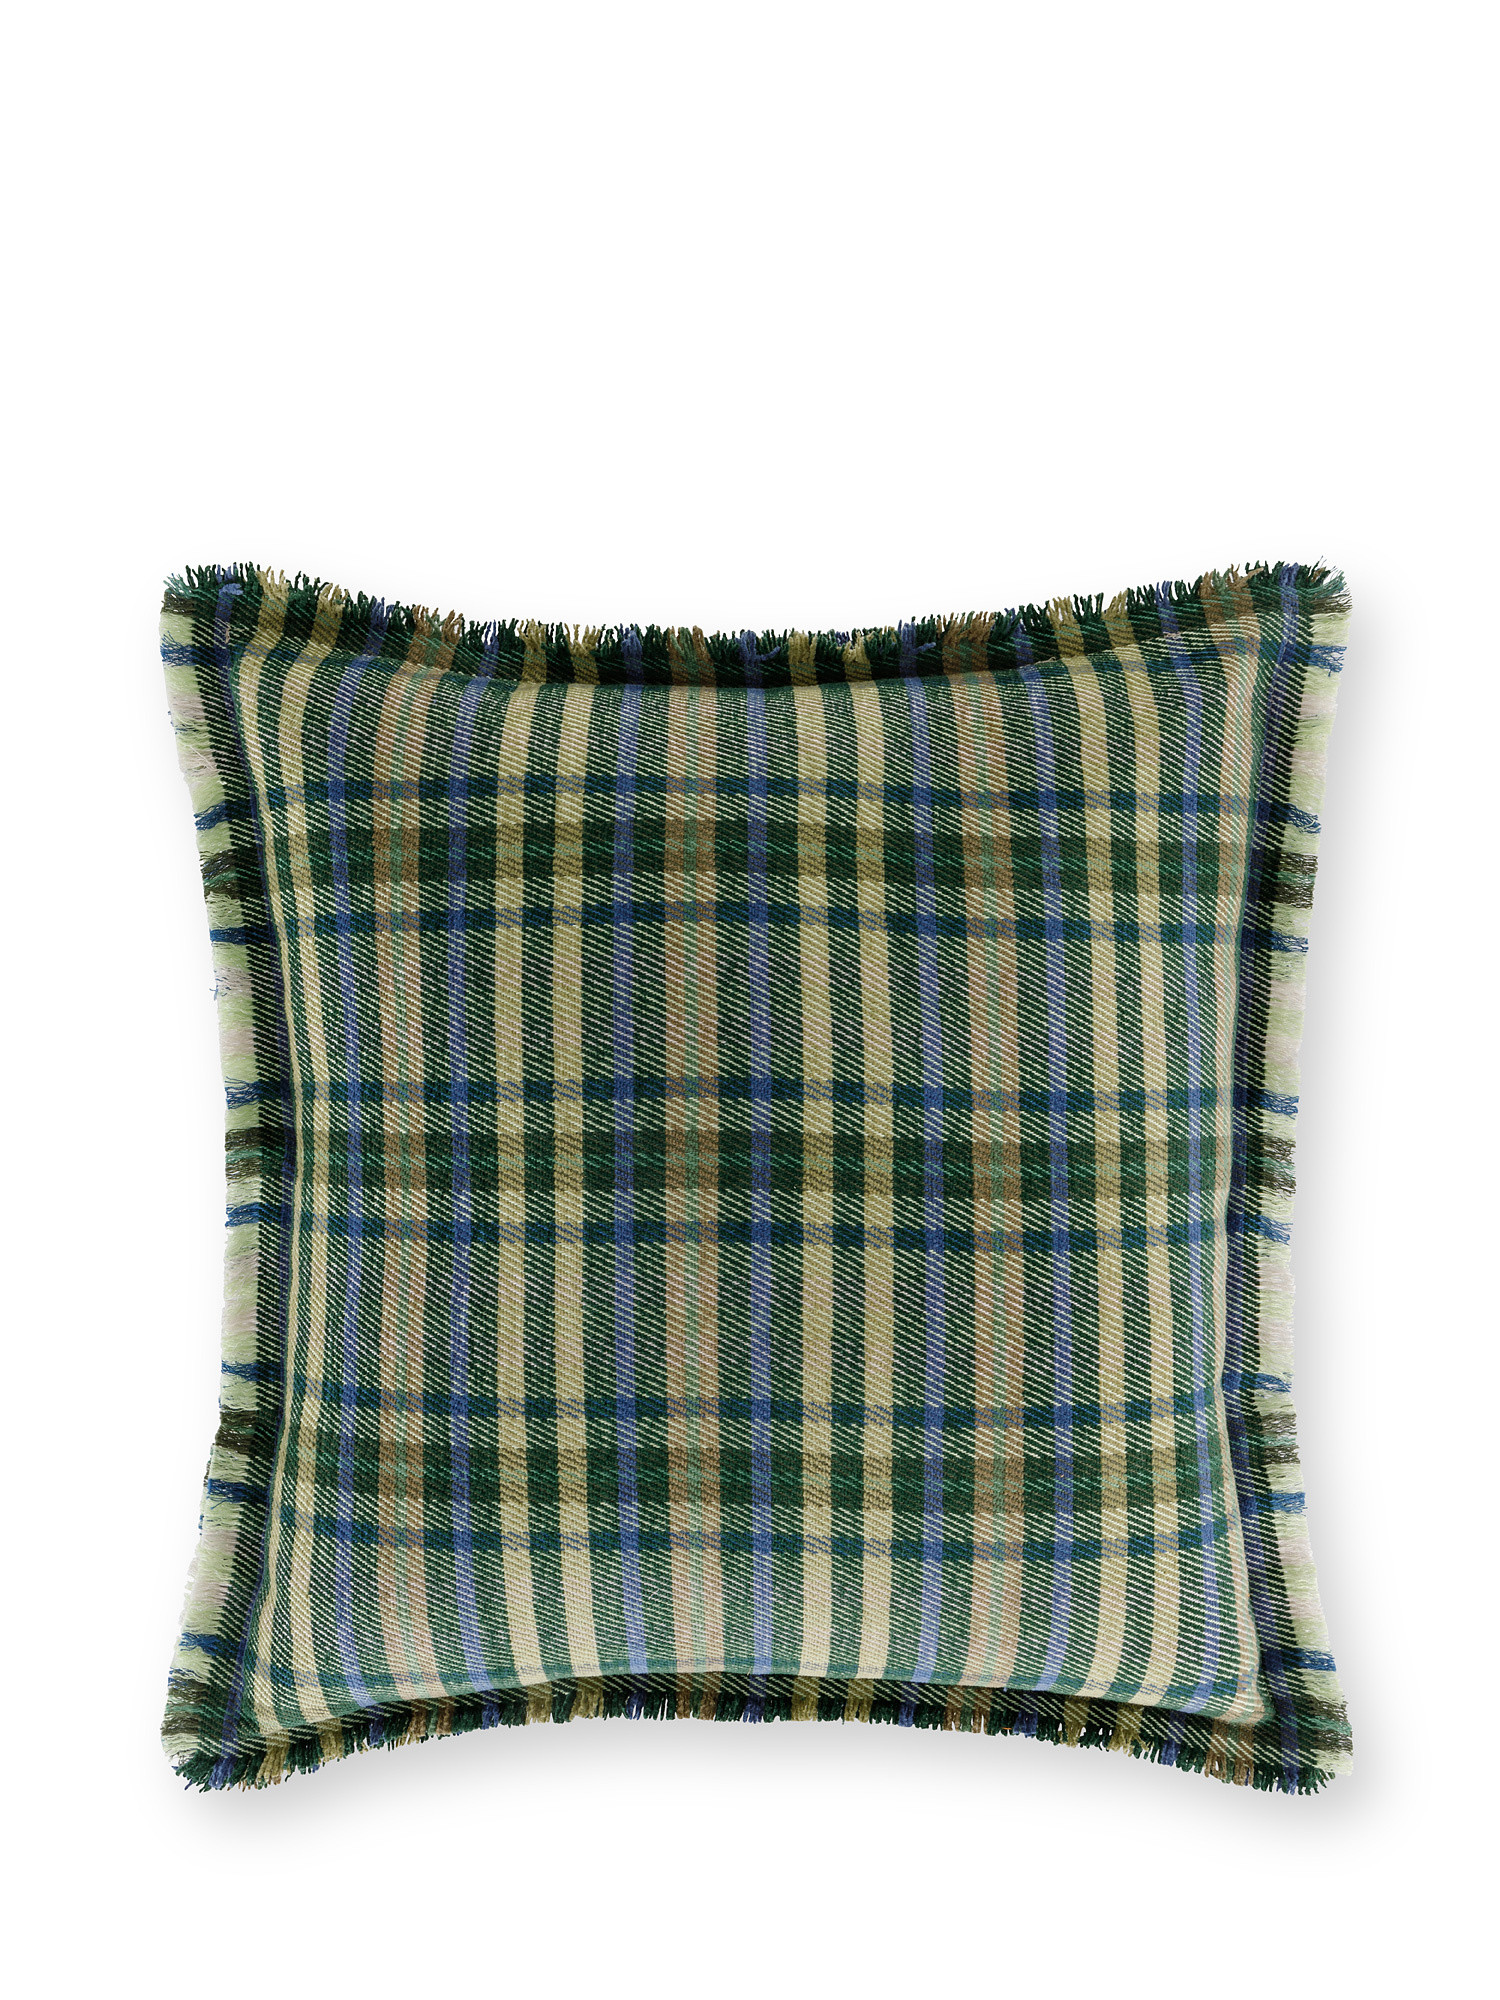 Cuscino ciniglia a quadri 45x45cm, Verde, large image number 0